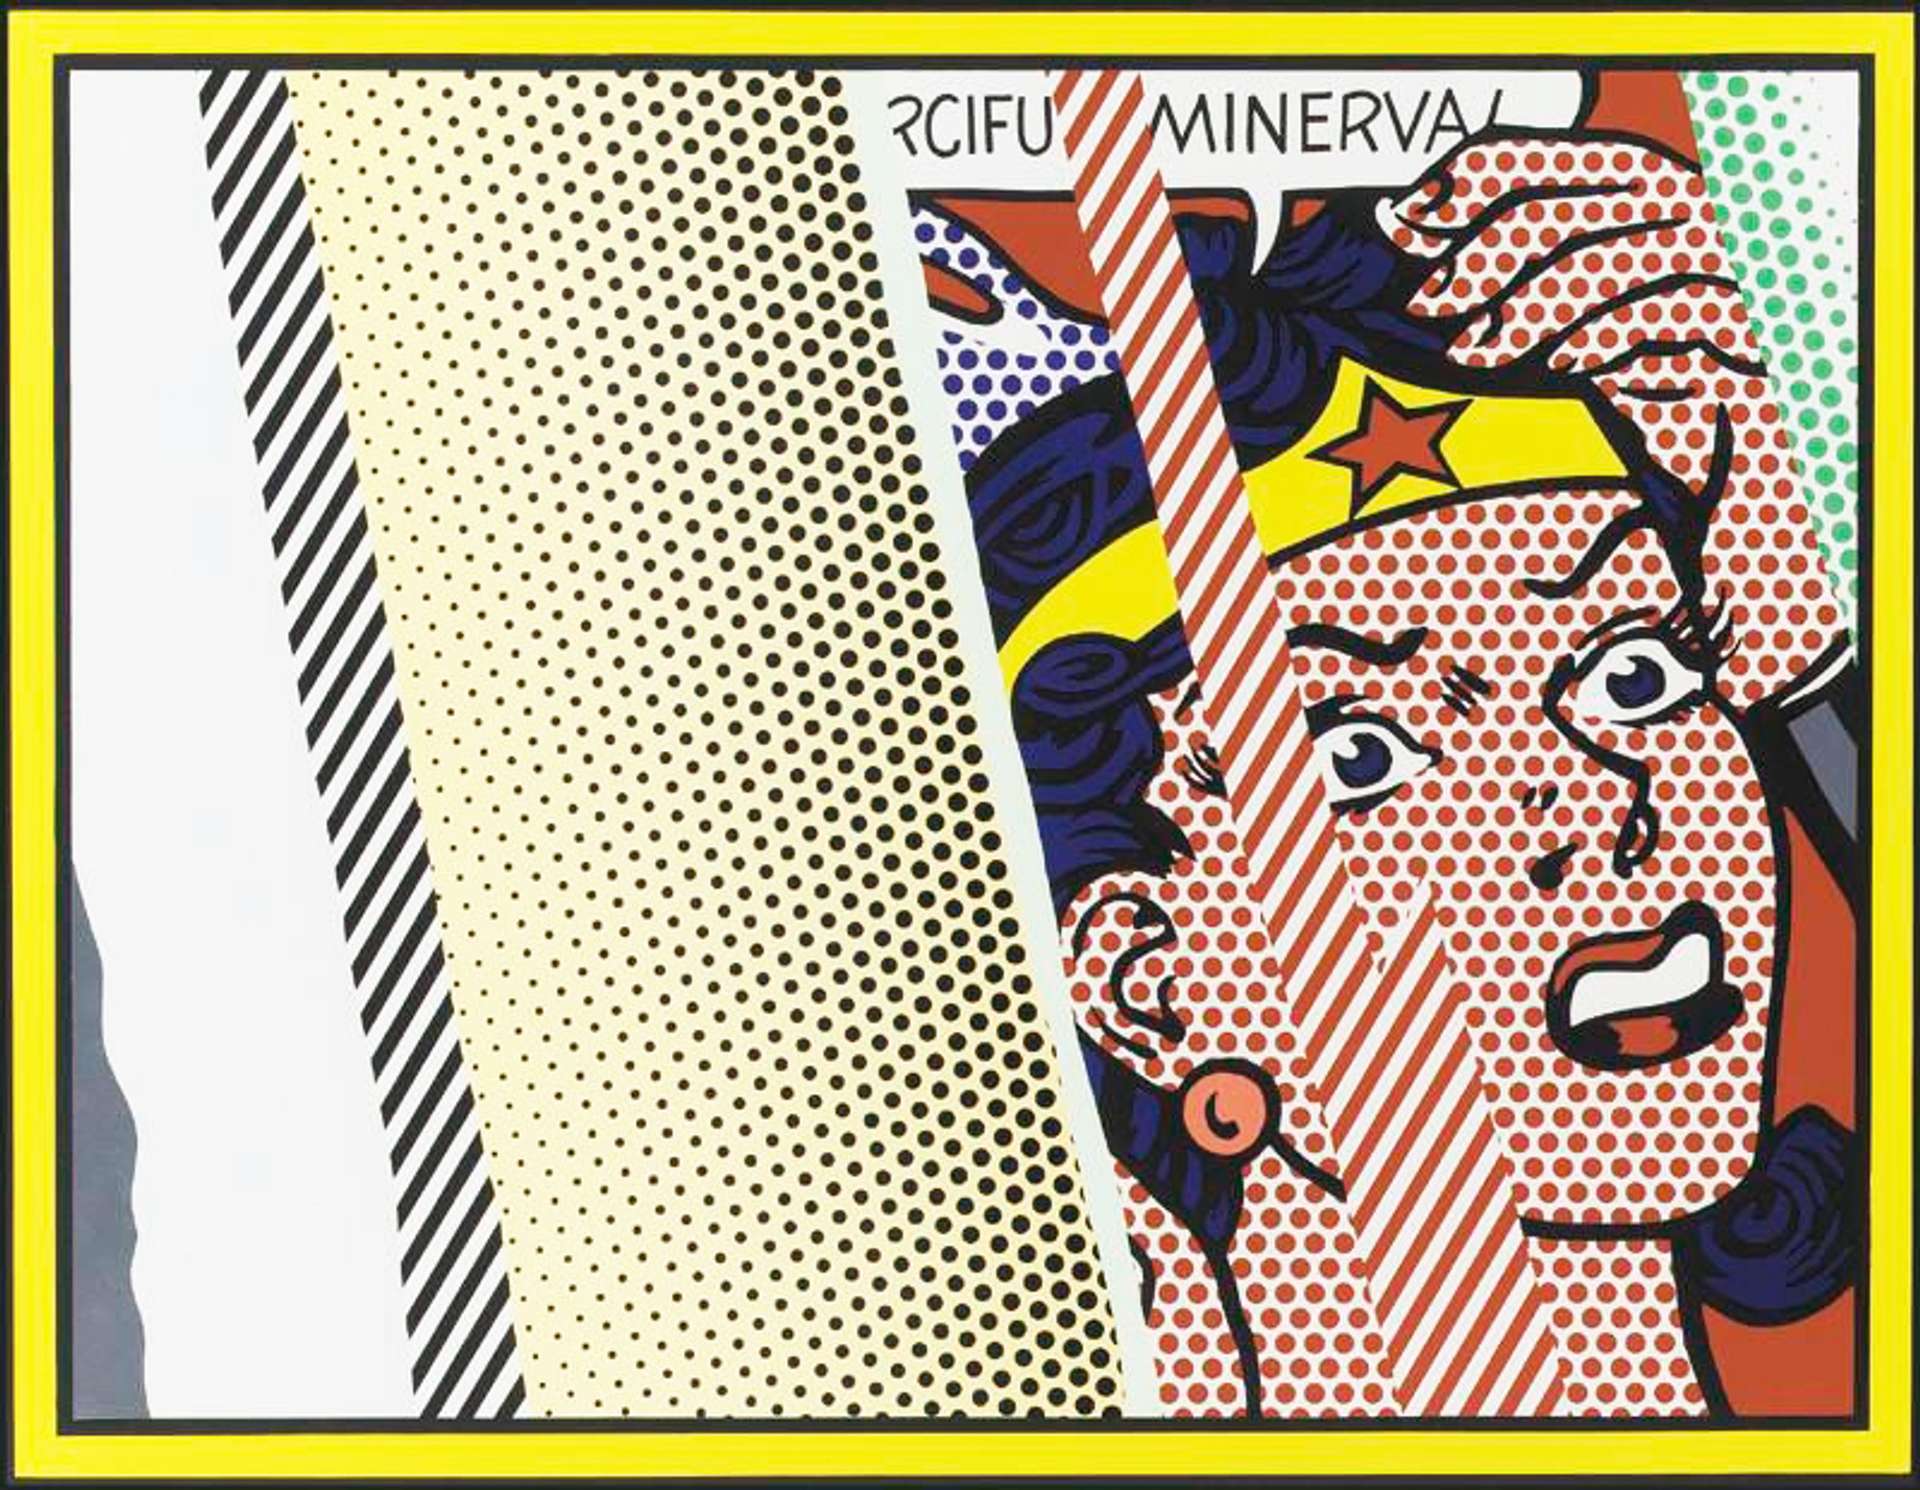 Reflections On Minerva by Roy Lichtenstein